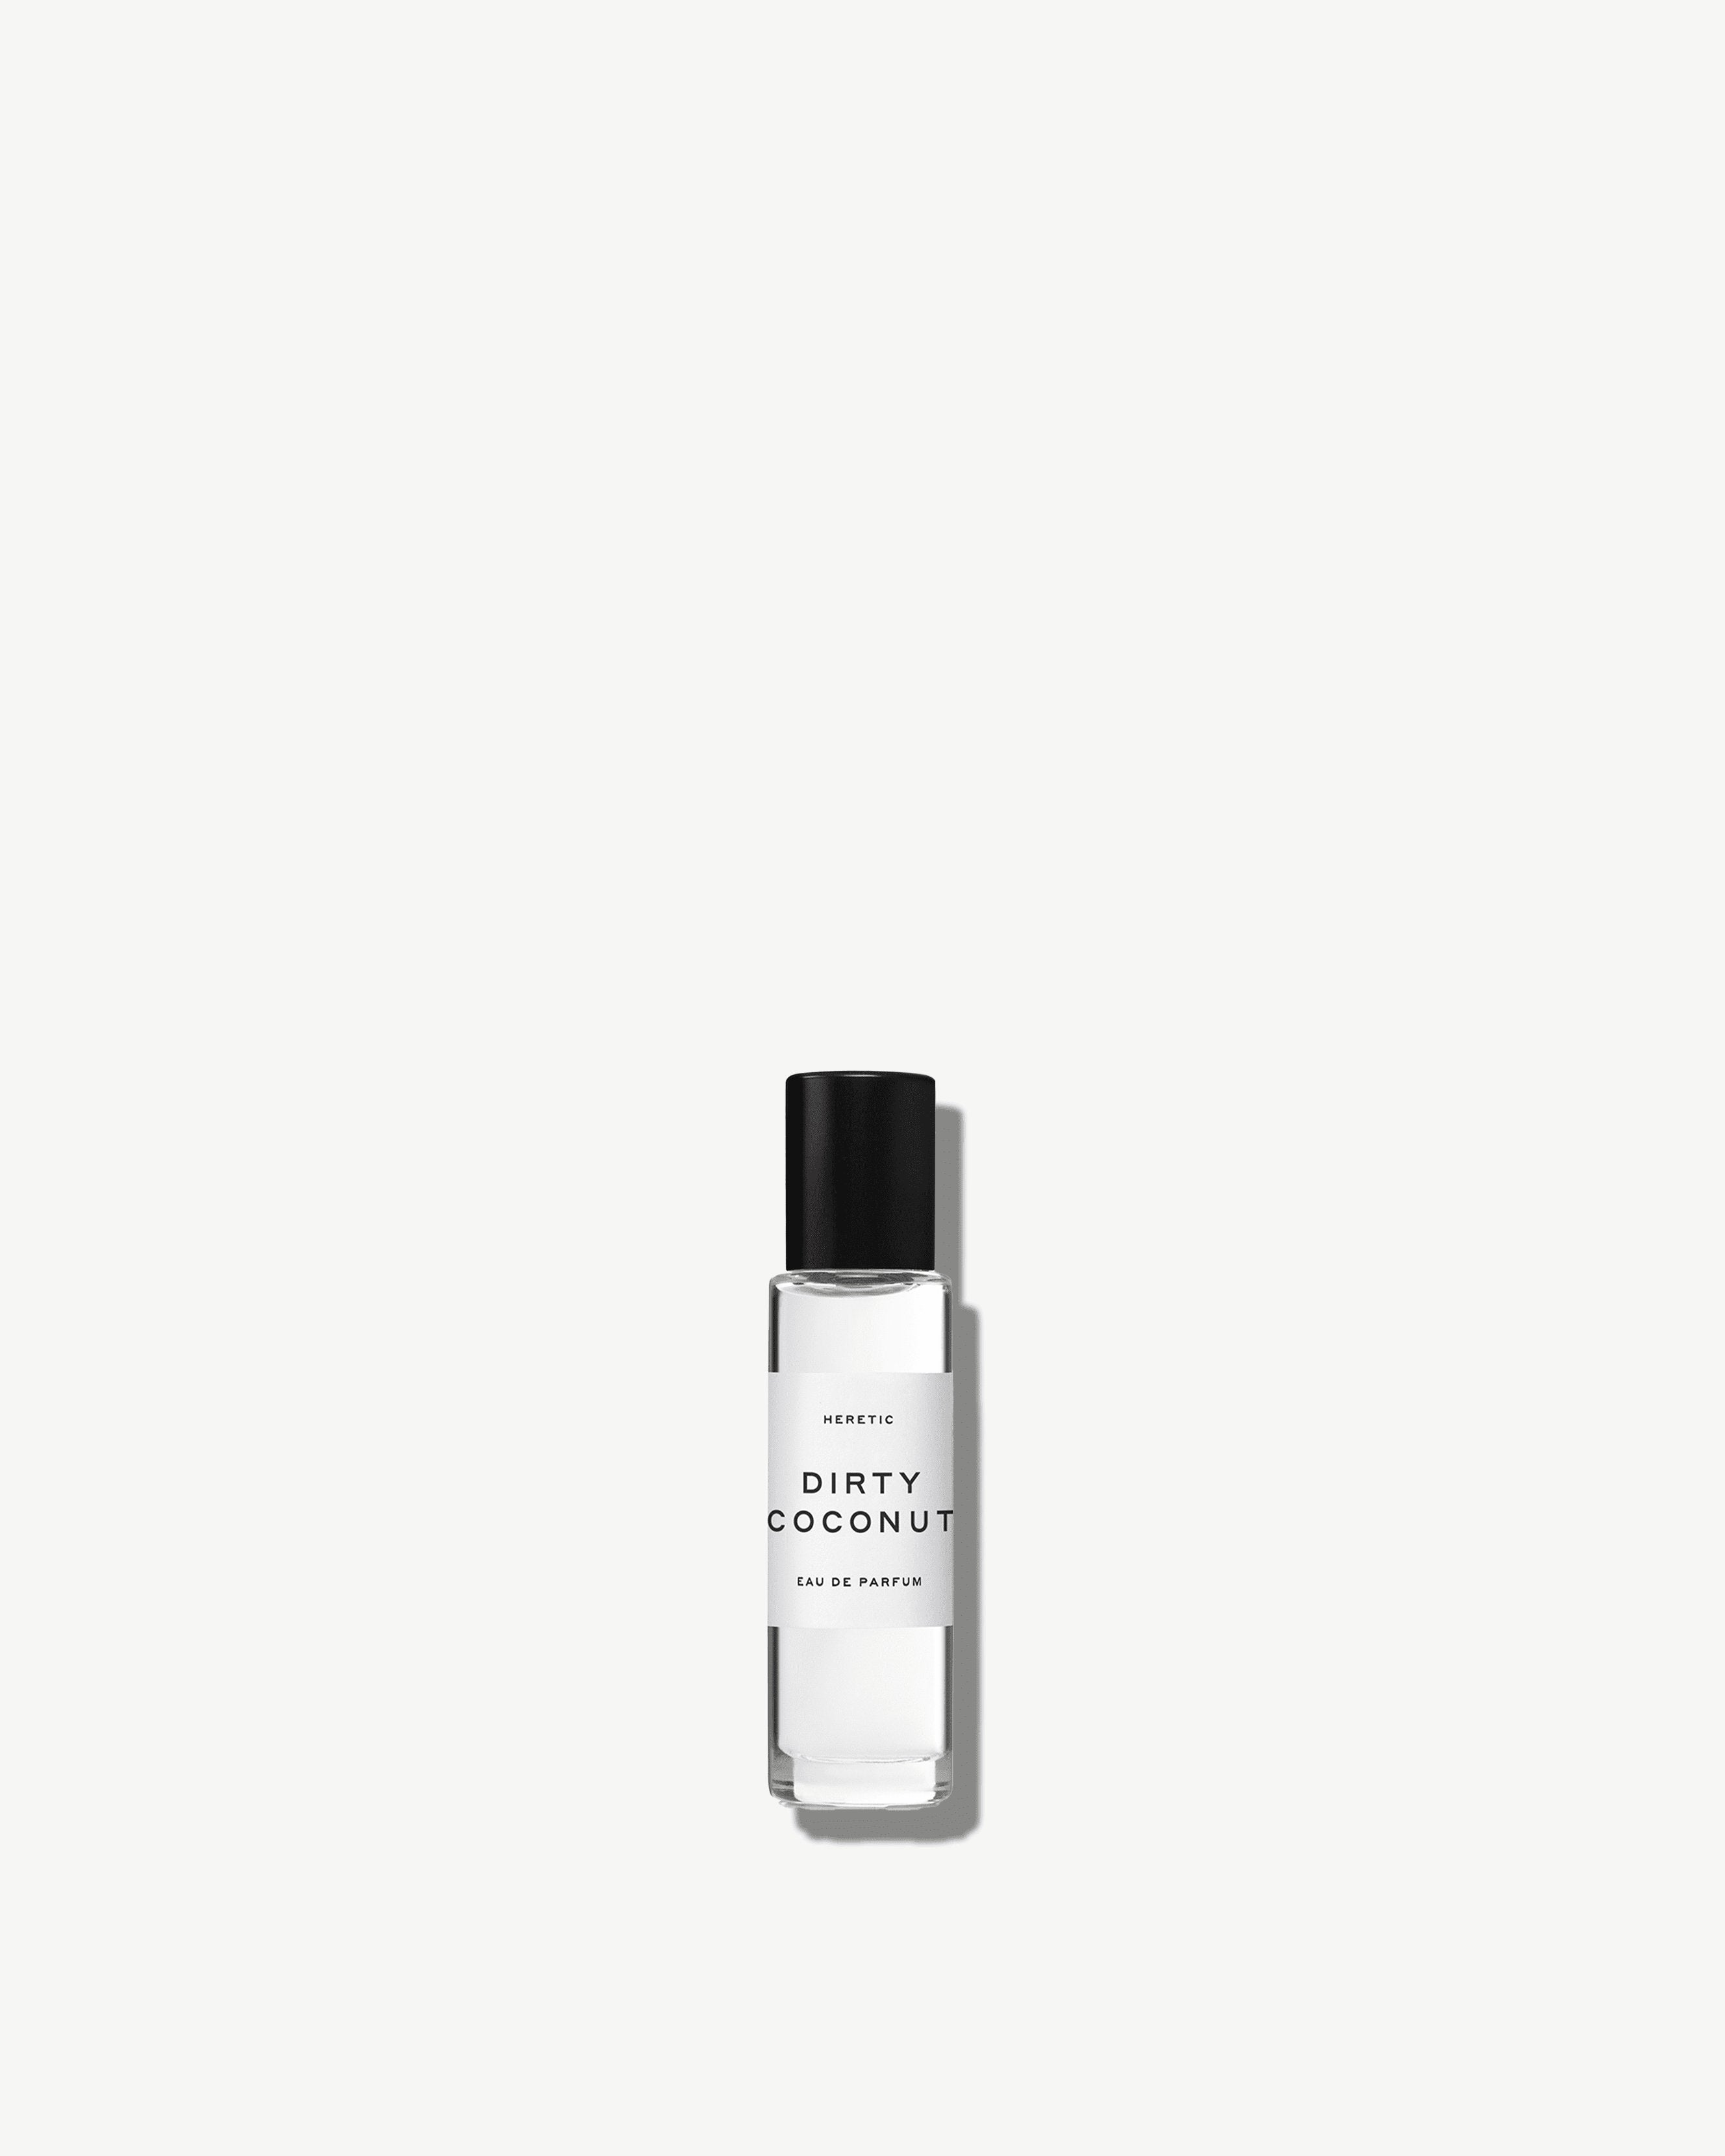 Dirty Coconut Eau de Parfum | Heretic Parfum 15ml